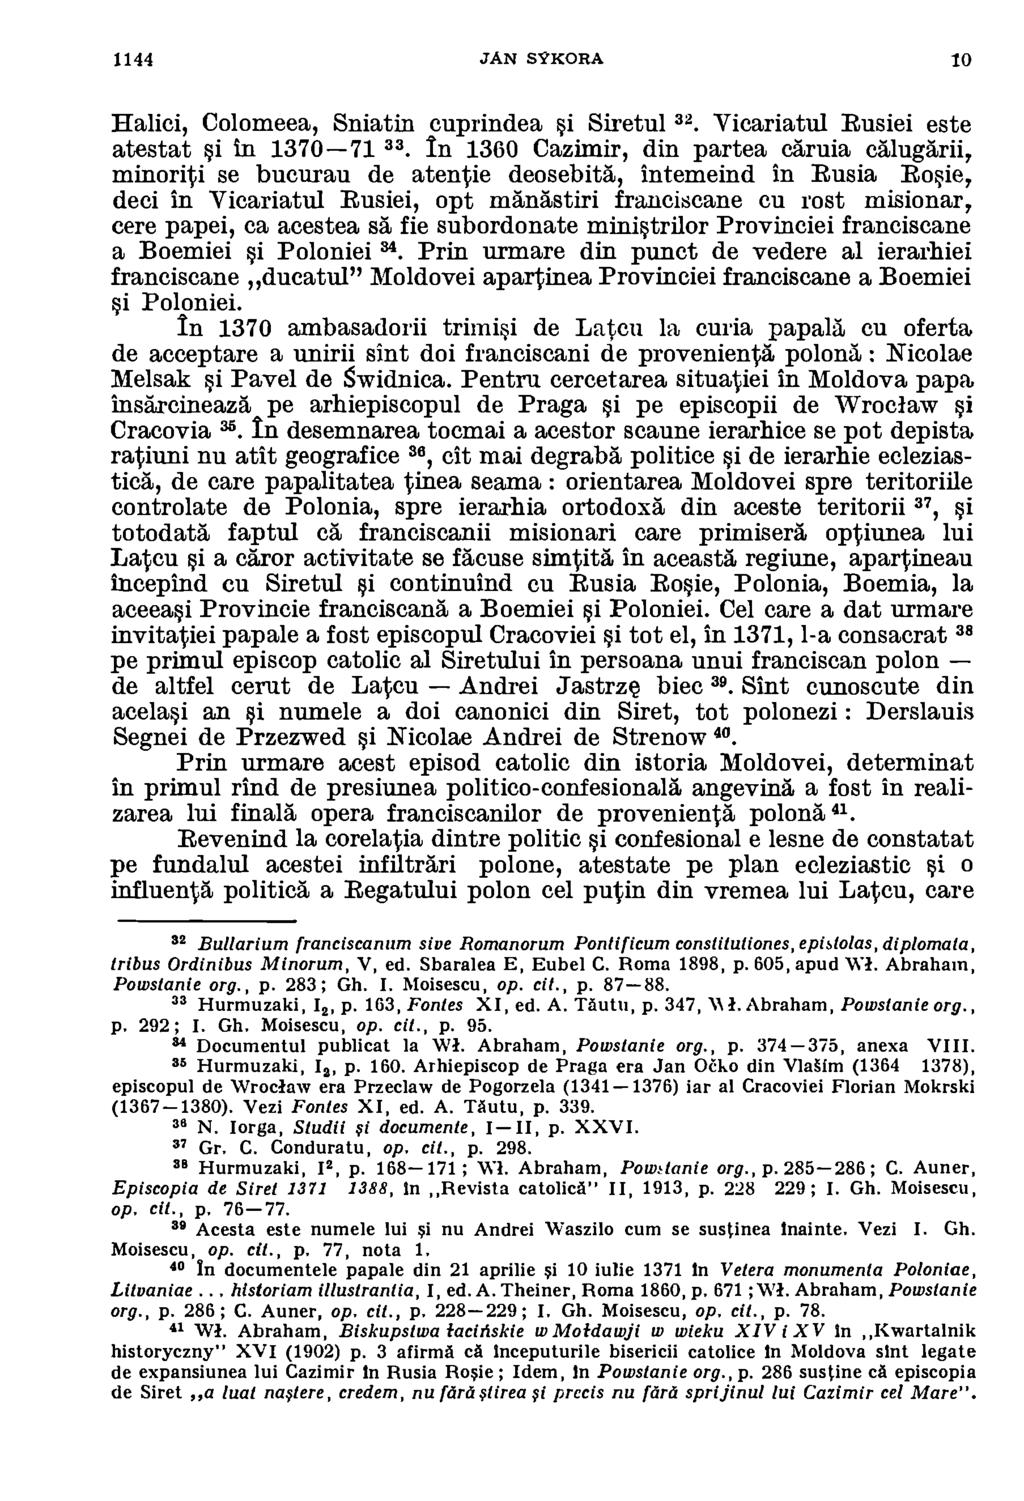 1144 TAN svkorta /0 Halici, Colomeea, Sniatin cuprindea i Siretul 32 Vicariatul Rusiei este atestat i in 1370-71 33.